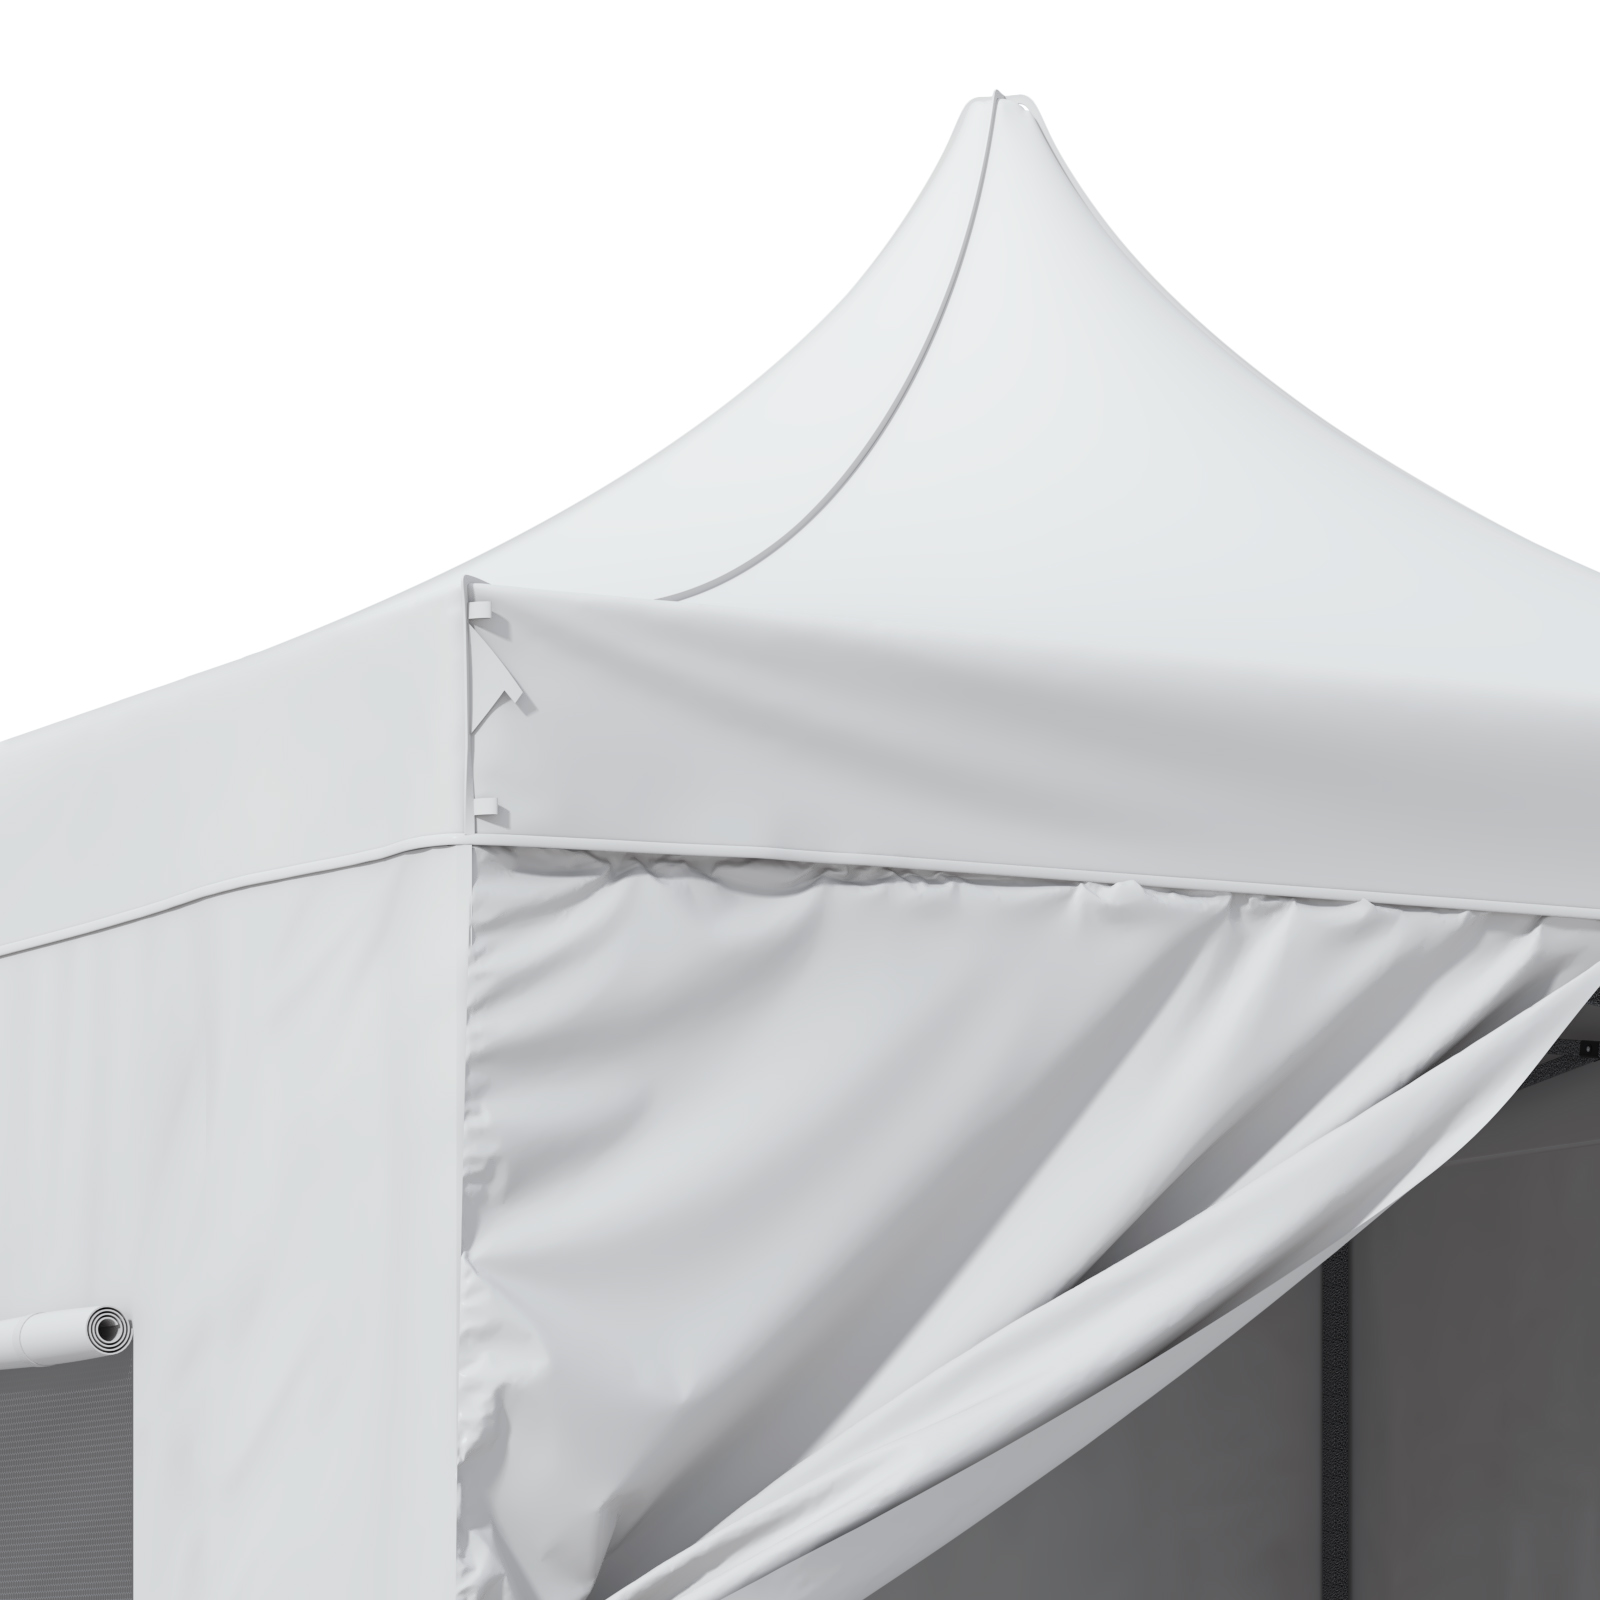 VEVOR беседка 304.8x304.8x320cm садовая палатка 500D PU серебряная ткань складная беседка регулируемая по высоте вкл. сумку для хранения палатка для вечеринок 6-8 человек всплывающая палатка белая садовая беседка для кемпинга